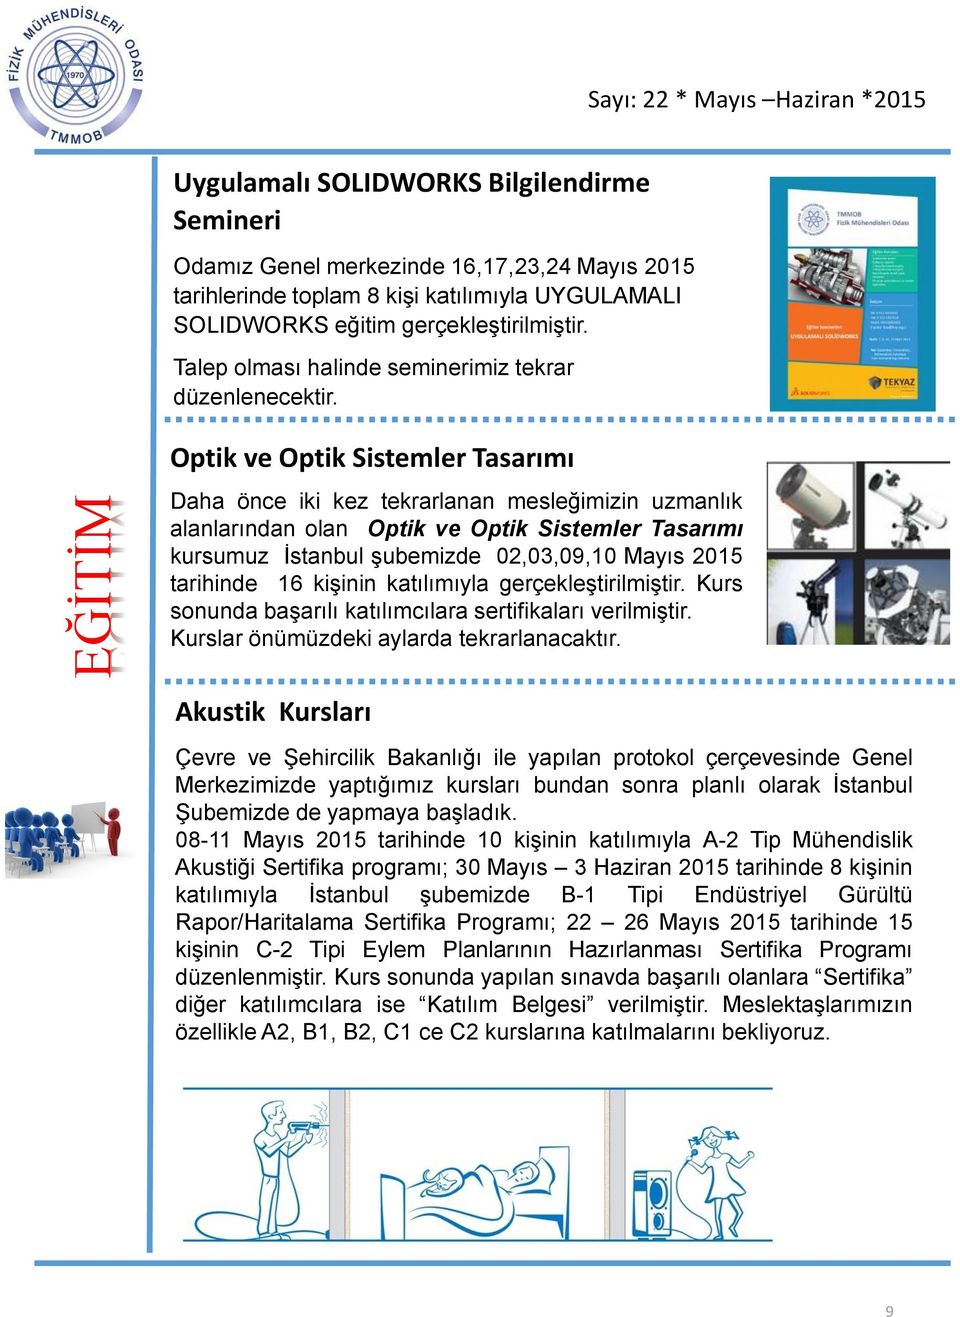 Optik ve Optik Sistemler Tasarımı Daha önce iki kez tekrarlanan mesleğimizin uzmanlık alanlarından olan Optik ve Optik Sistemler Tasarımı kursumuz İstanbul şubemizde 02,03,09,10 Mayıs 2015 tarihinde